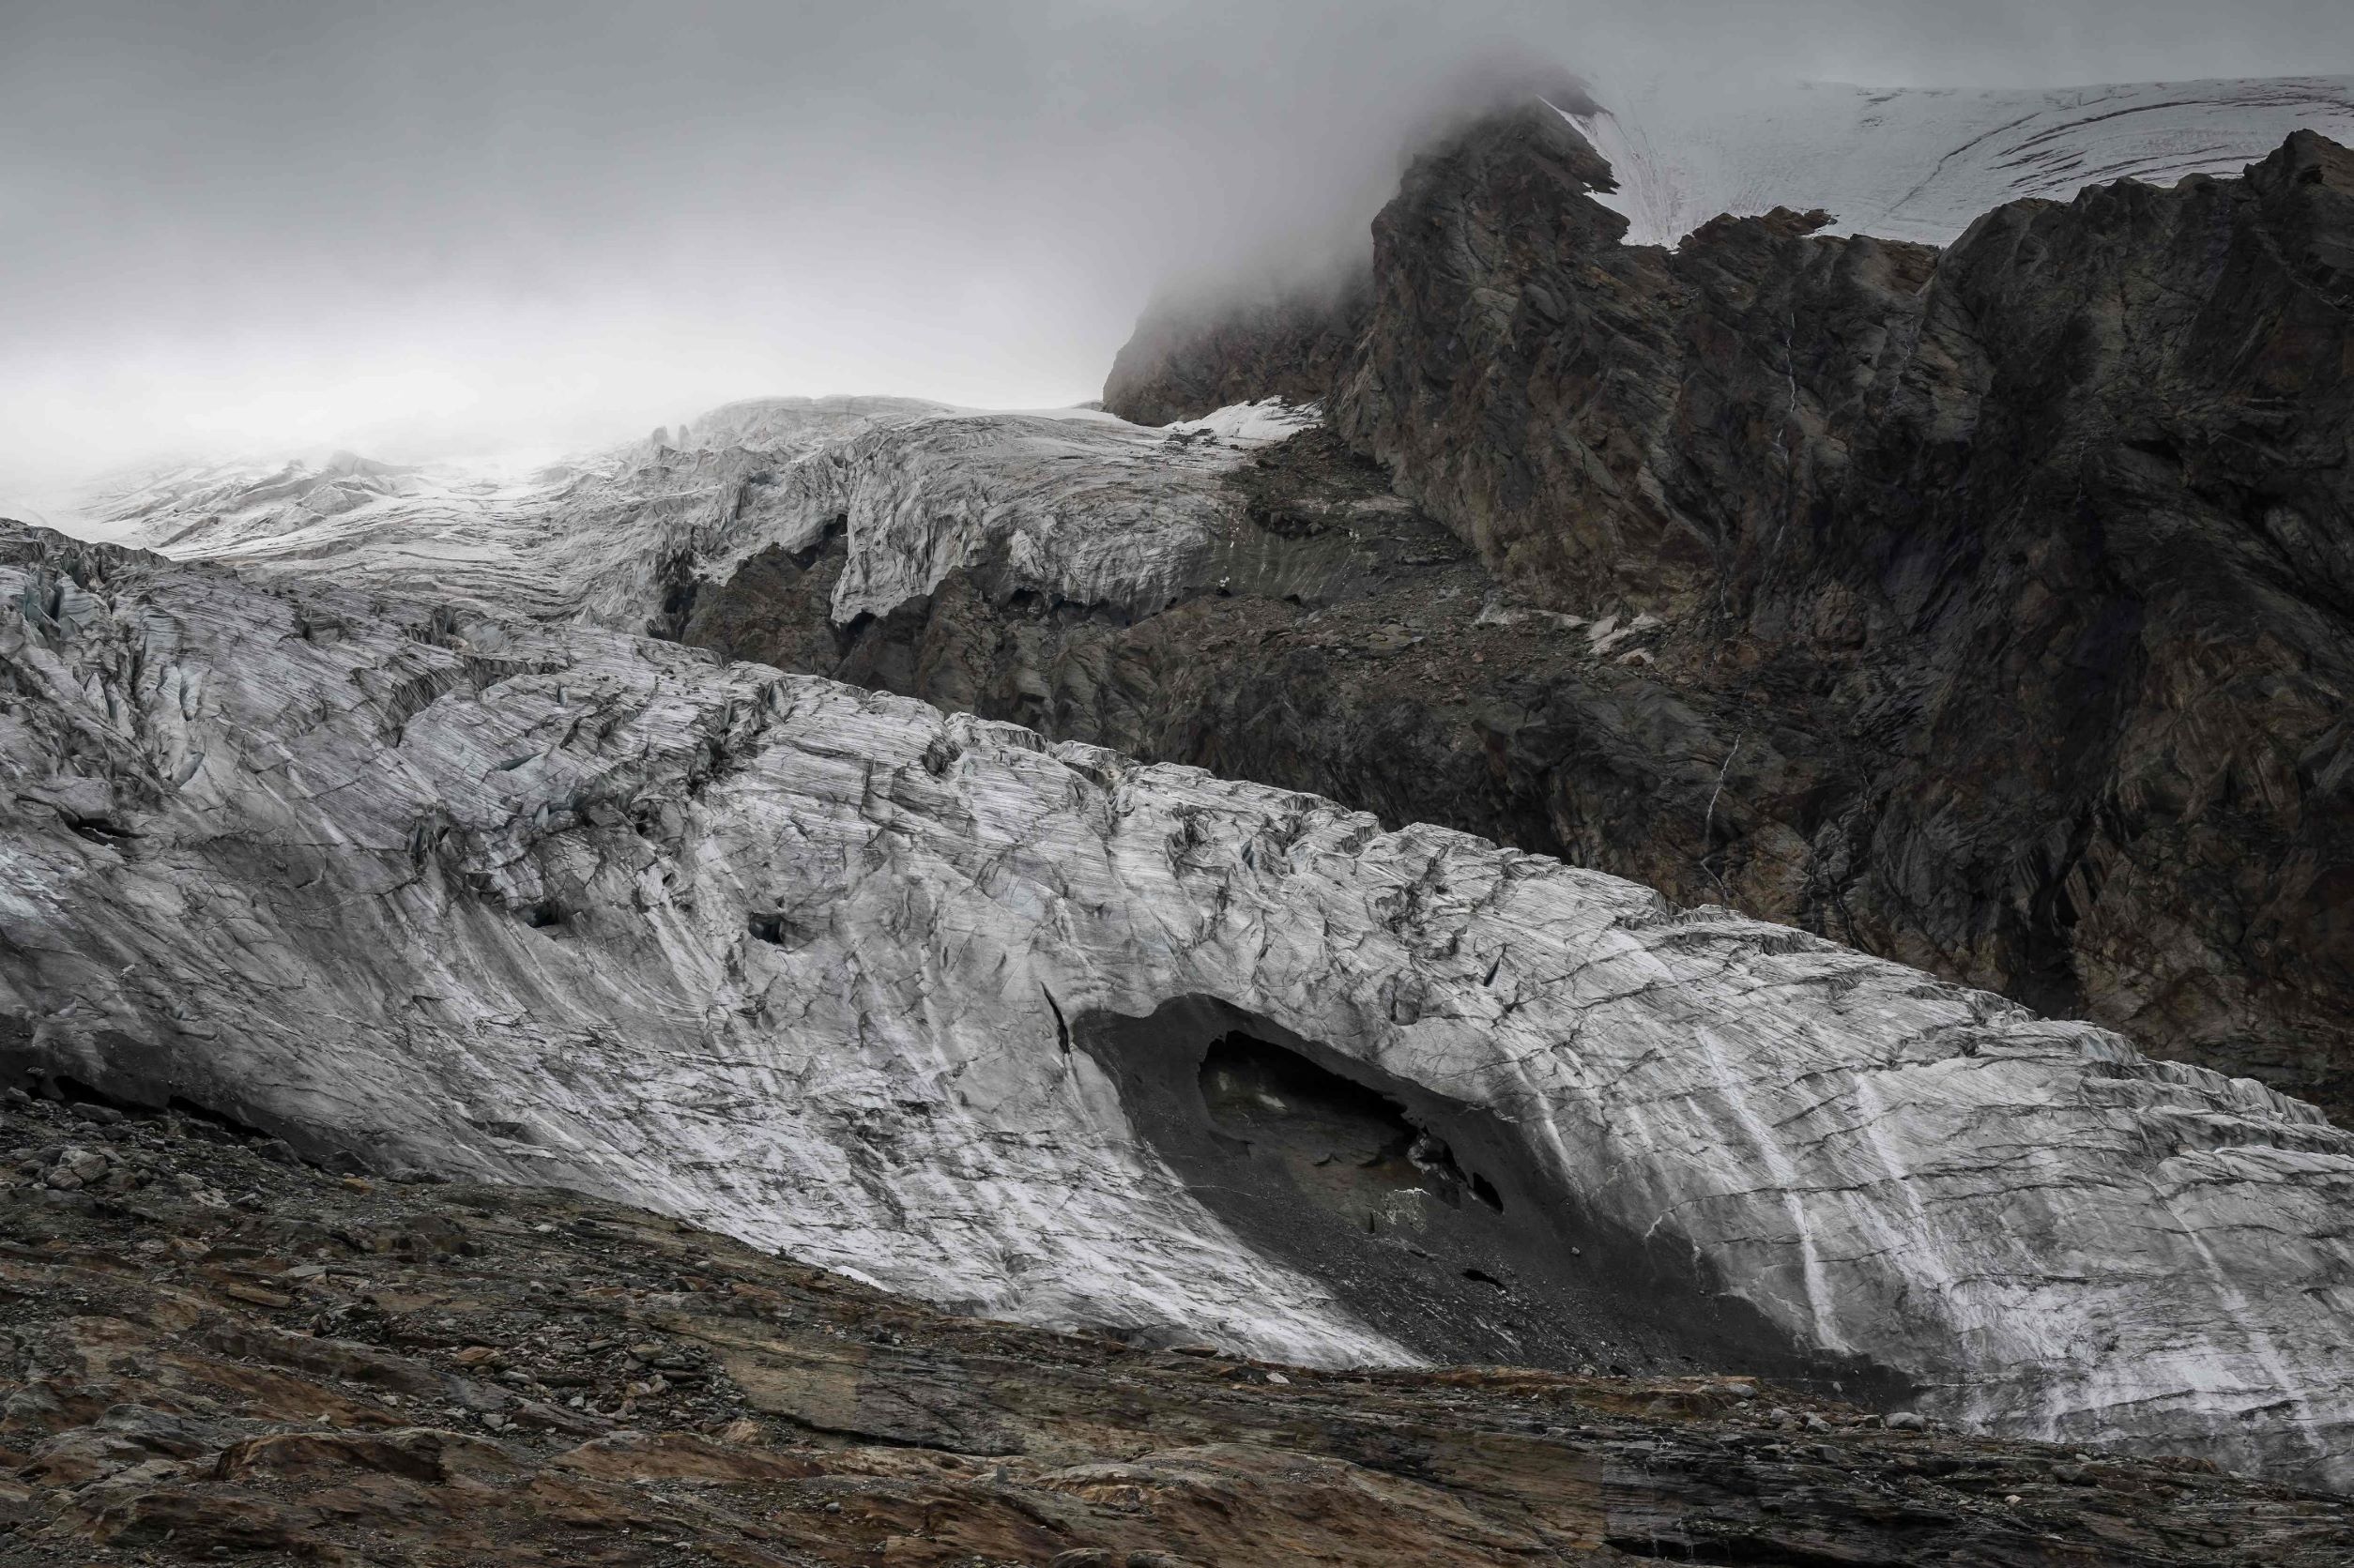 كهف يظهر إثر ذوبان في نهر جليدي فوق منتجع "ساس-في" سويسري في جبال الألب، يوليو 2022 (أ ف ب)